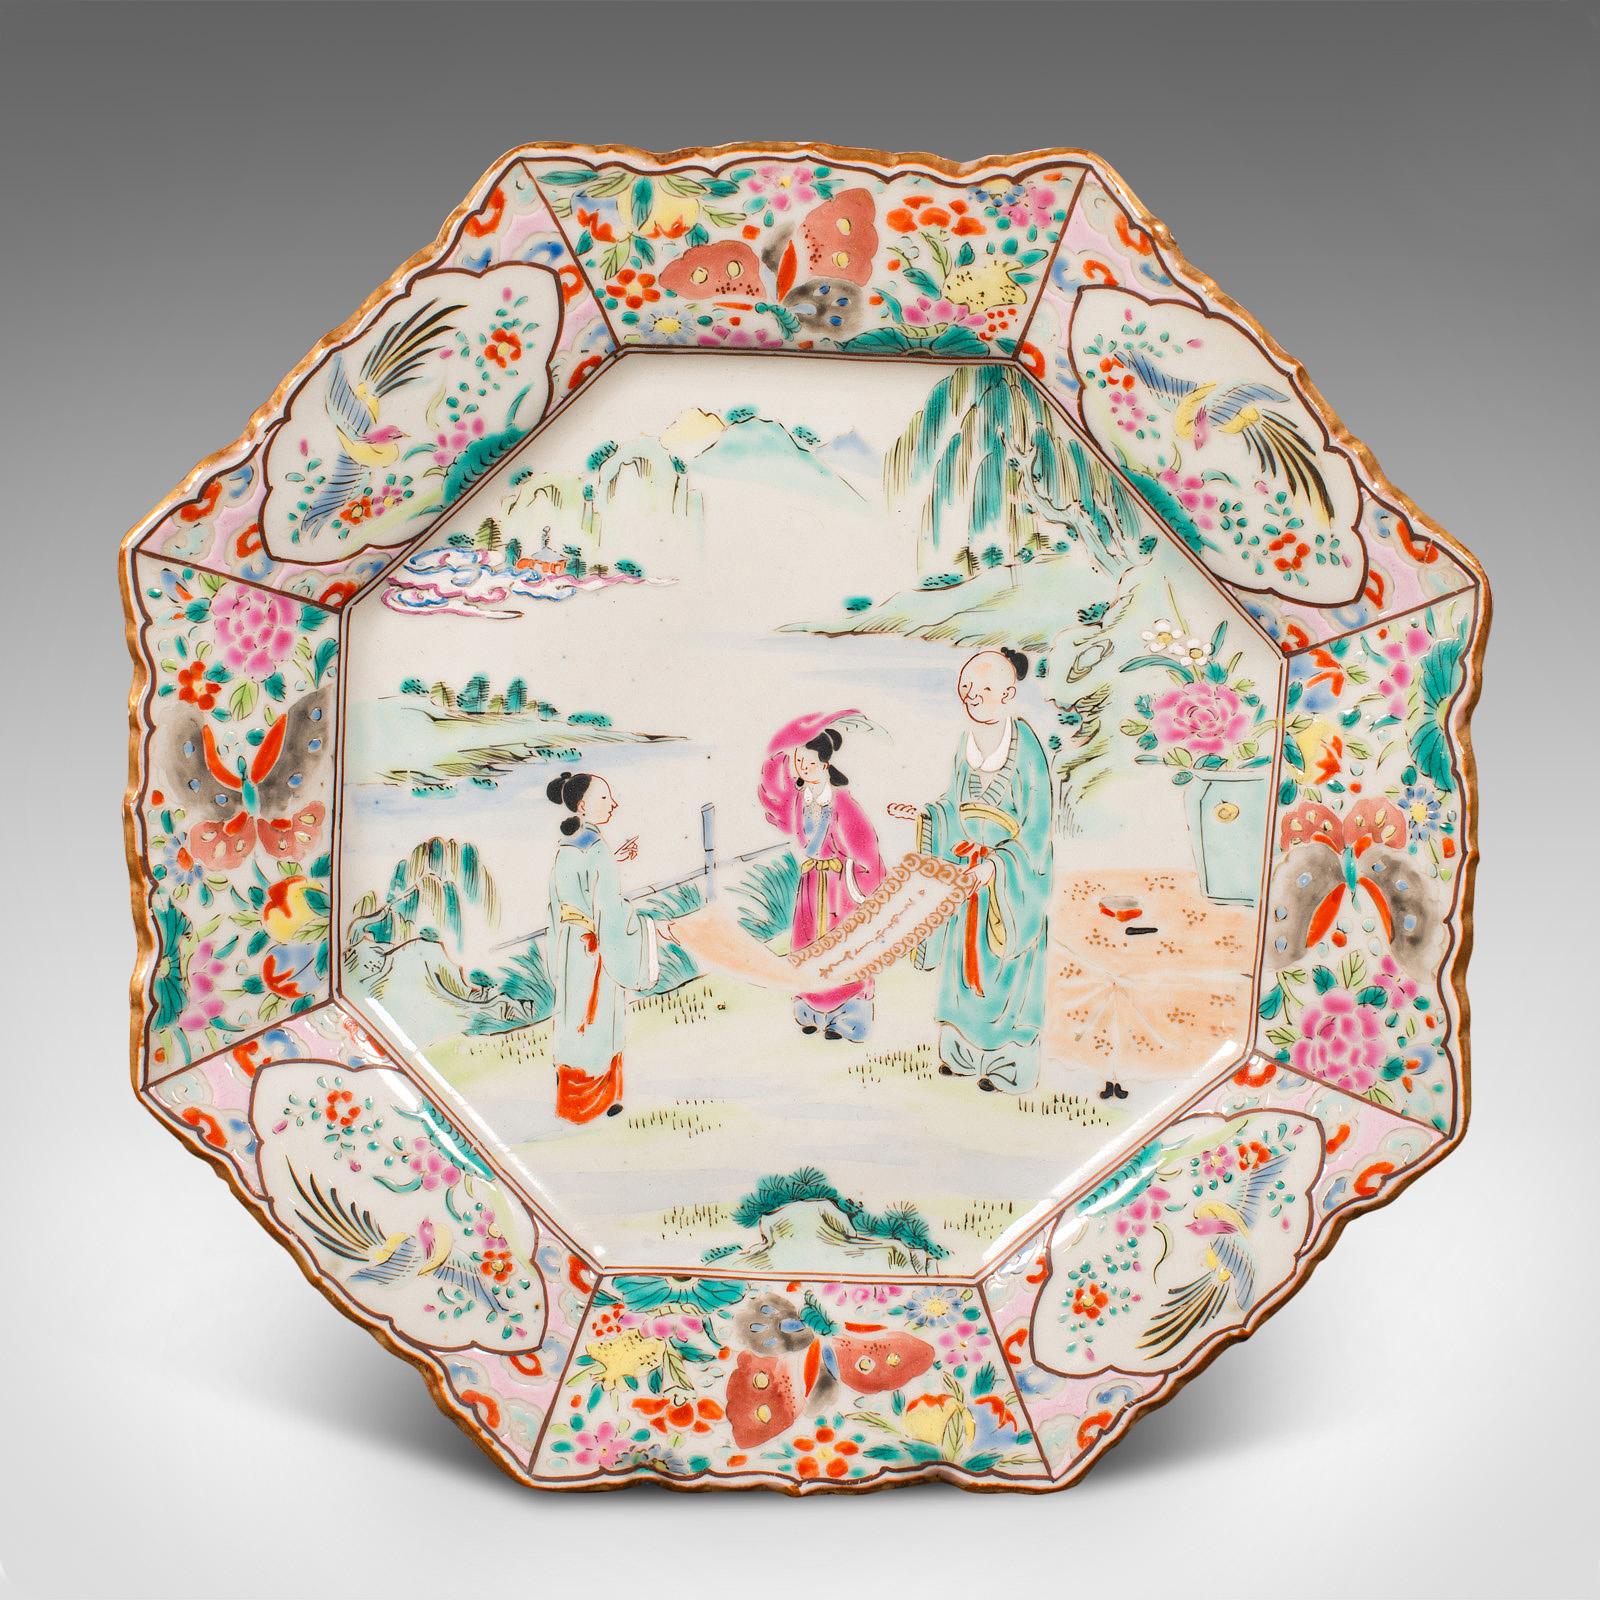 Il s'agit d'un ancien plat de service octogonal. Chargeur décoratif japonais en céramique, datant de la fin de la période victorienne, vers 1900.

Vibrant et charmant, avec un merveilleux attrait décoratif
Présente une patine d'usage désirable et